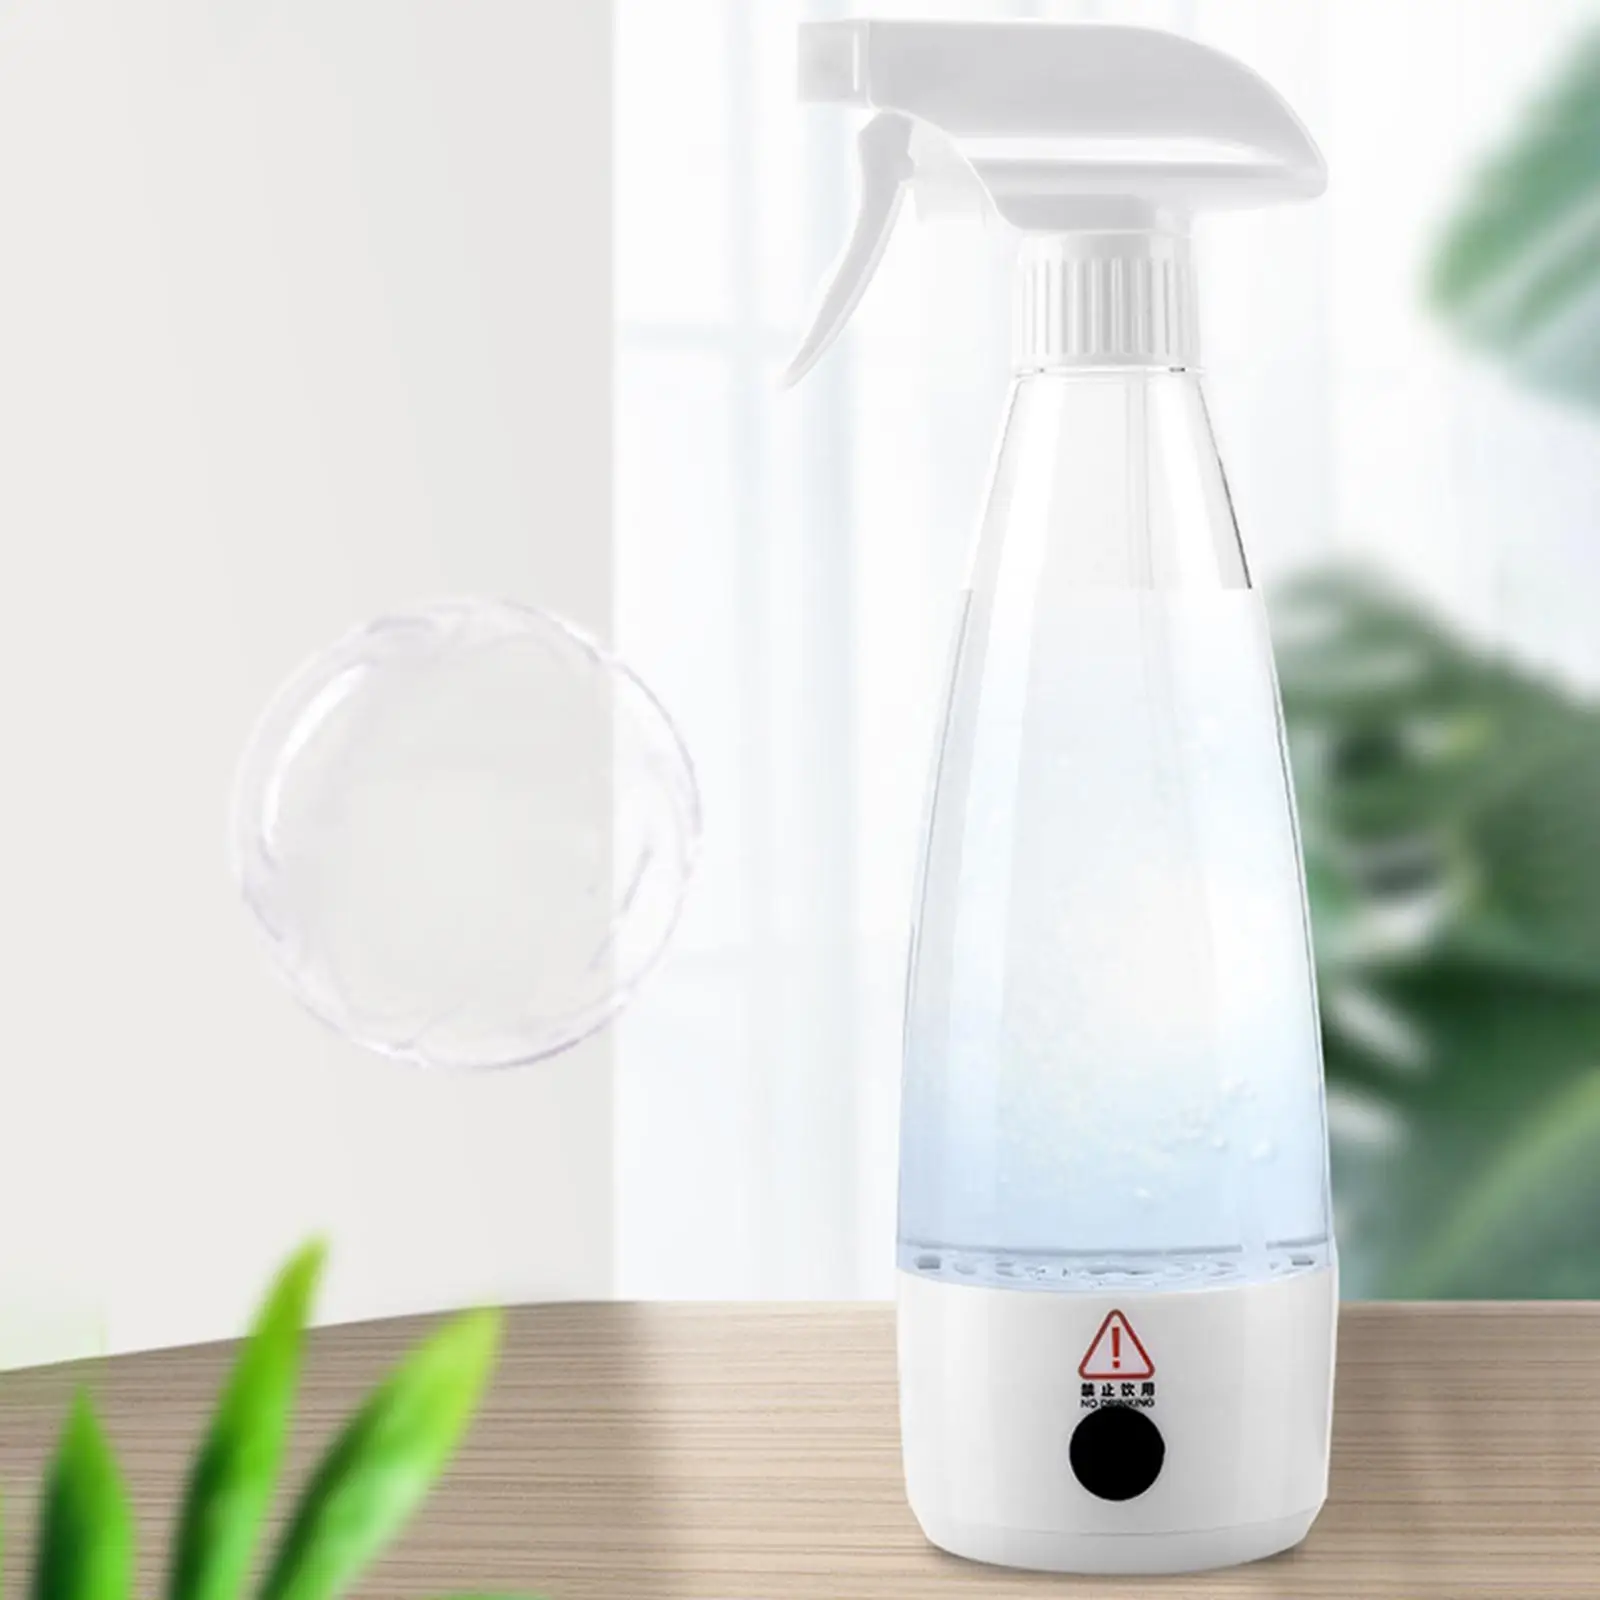 Detergent Spray Bottle Salt & water Sprayer Bottle 350ml for Toilet Home